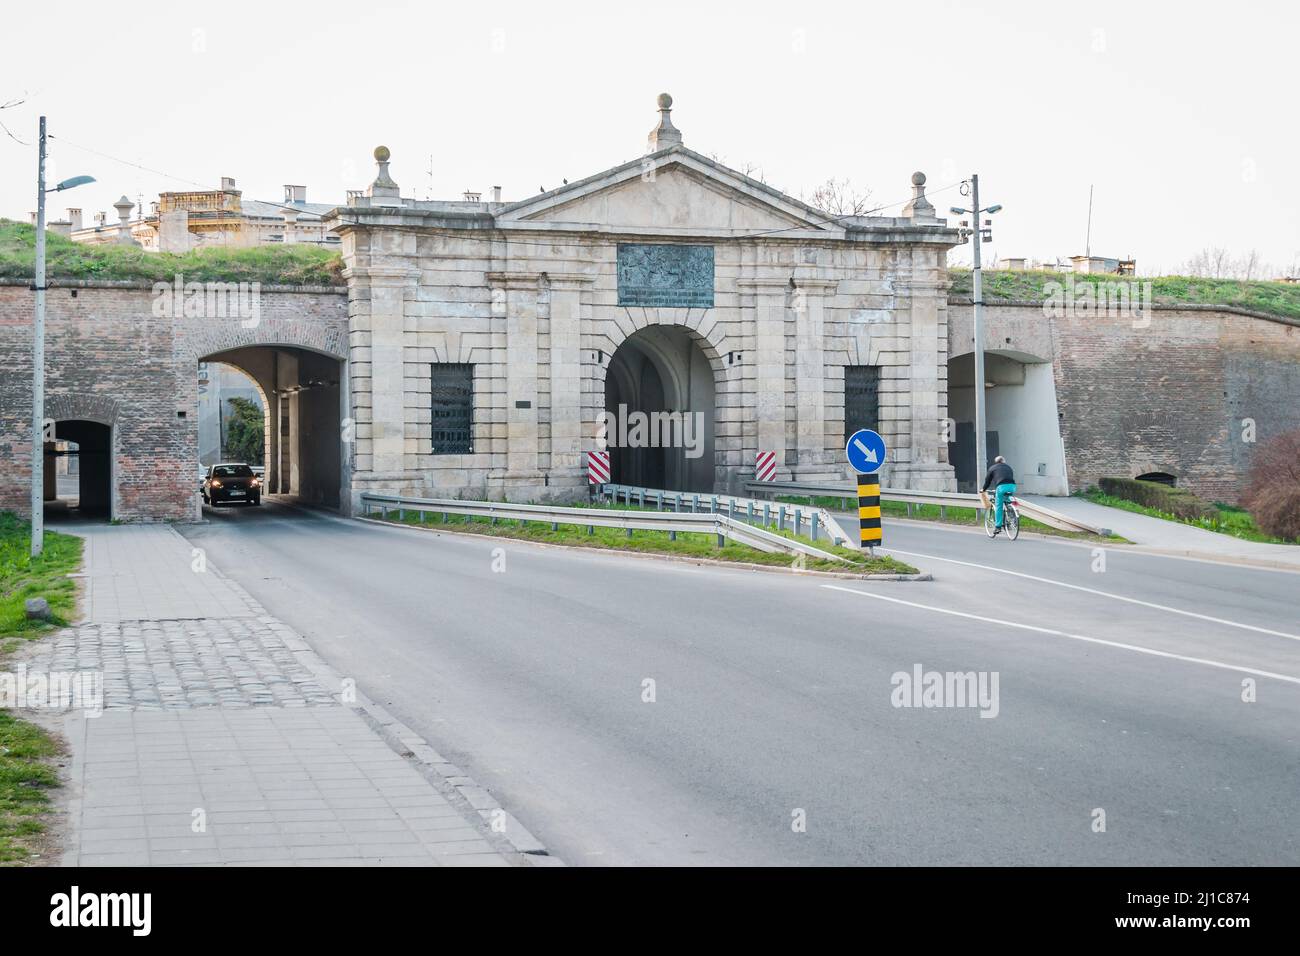 Novi Sad, Serbien - 16. März 2019: Blick auf das Belgrader Tor in der Festung Petrovaradin in Petrovaradin, Novi Sad, Serbien. Redaktionelles Bild. Stockfoto